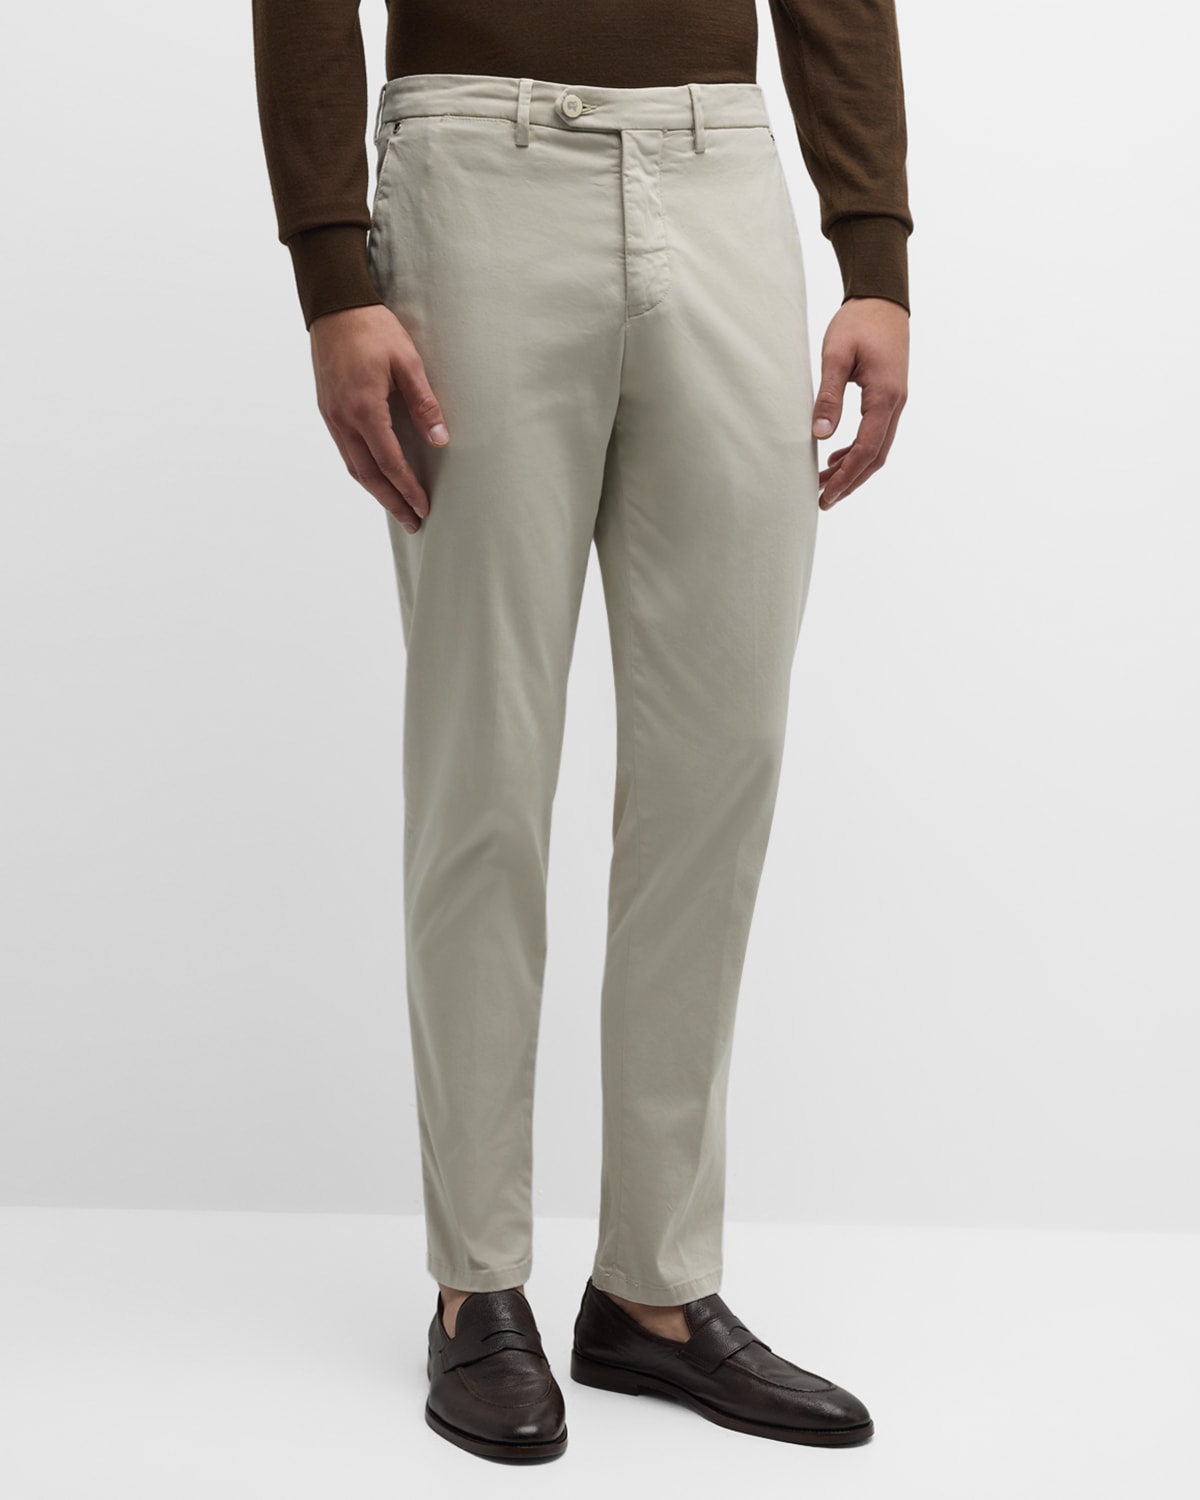 Marco Pescarolo Men's Supima Cotton Dress Pants In Beige